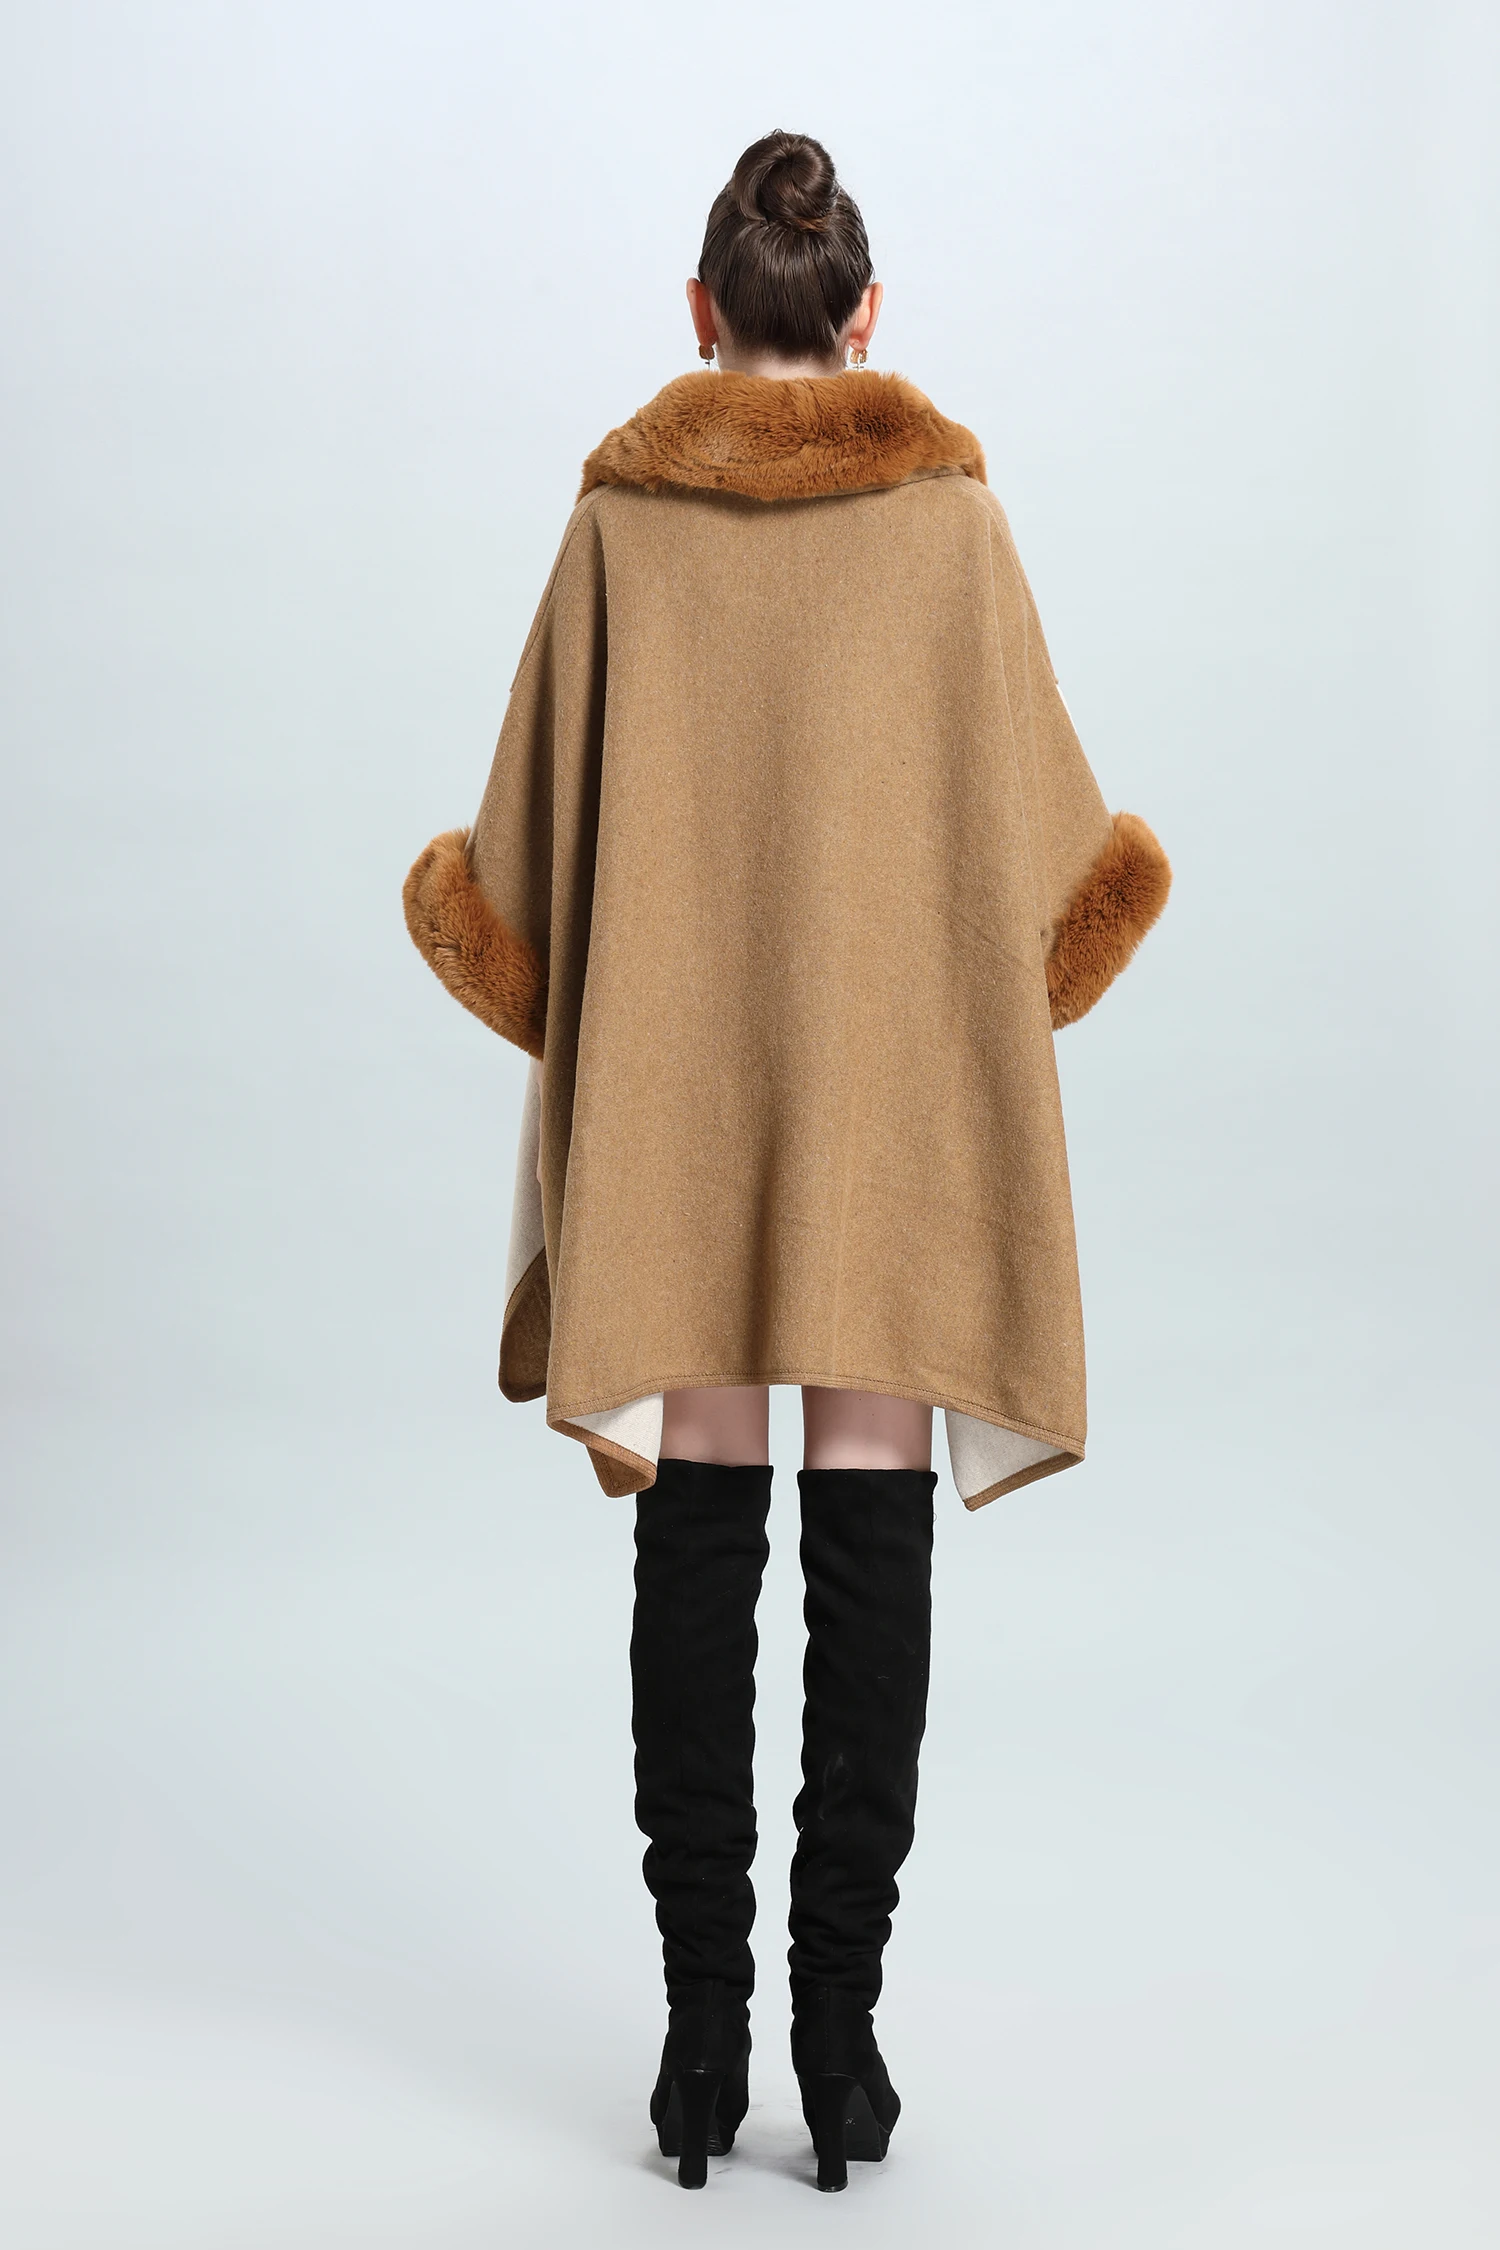 7 Renk Blok Kış Sıcak Artı Boyutu Gevşek Panço Palto Büyük Faux Kürk Boyun Şal Pelerin Kadın Kaşmir Outstreet Kalın Giyim ceket 1